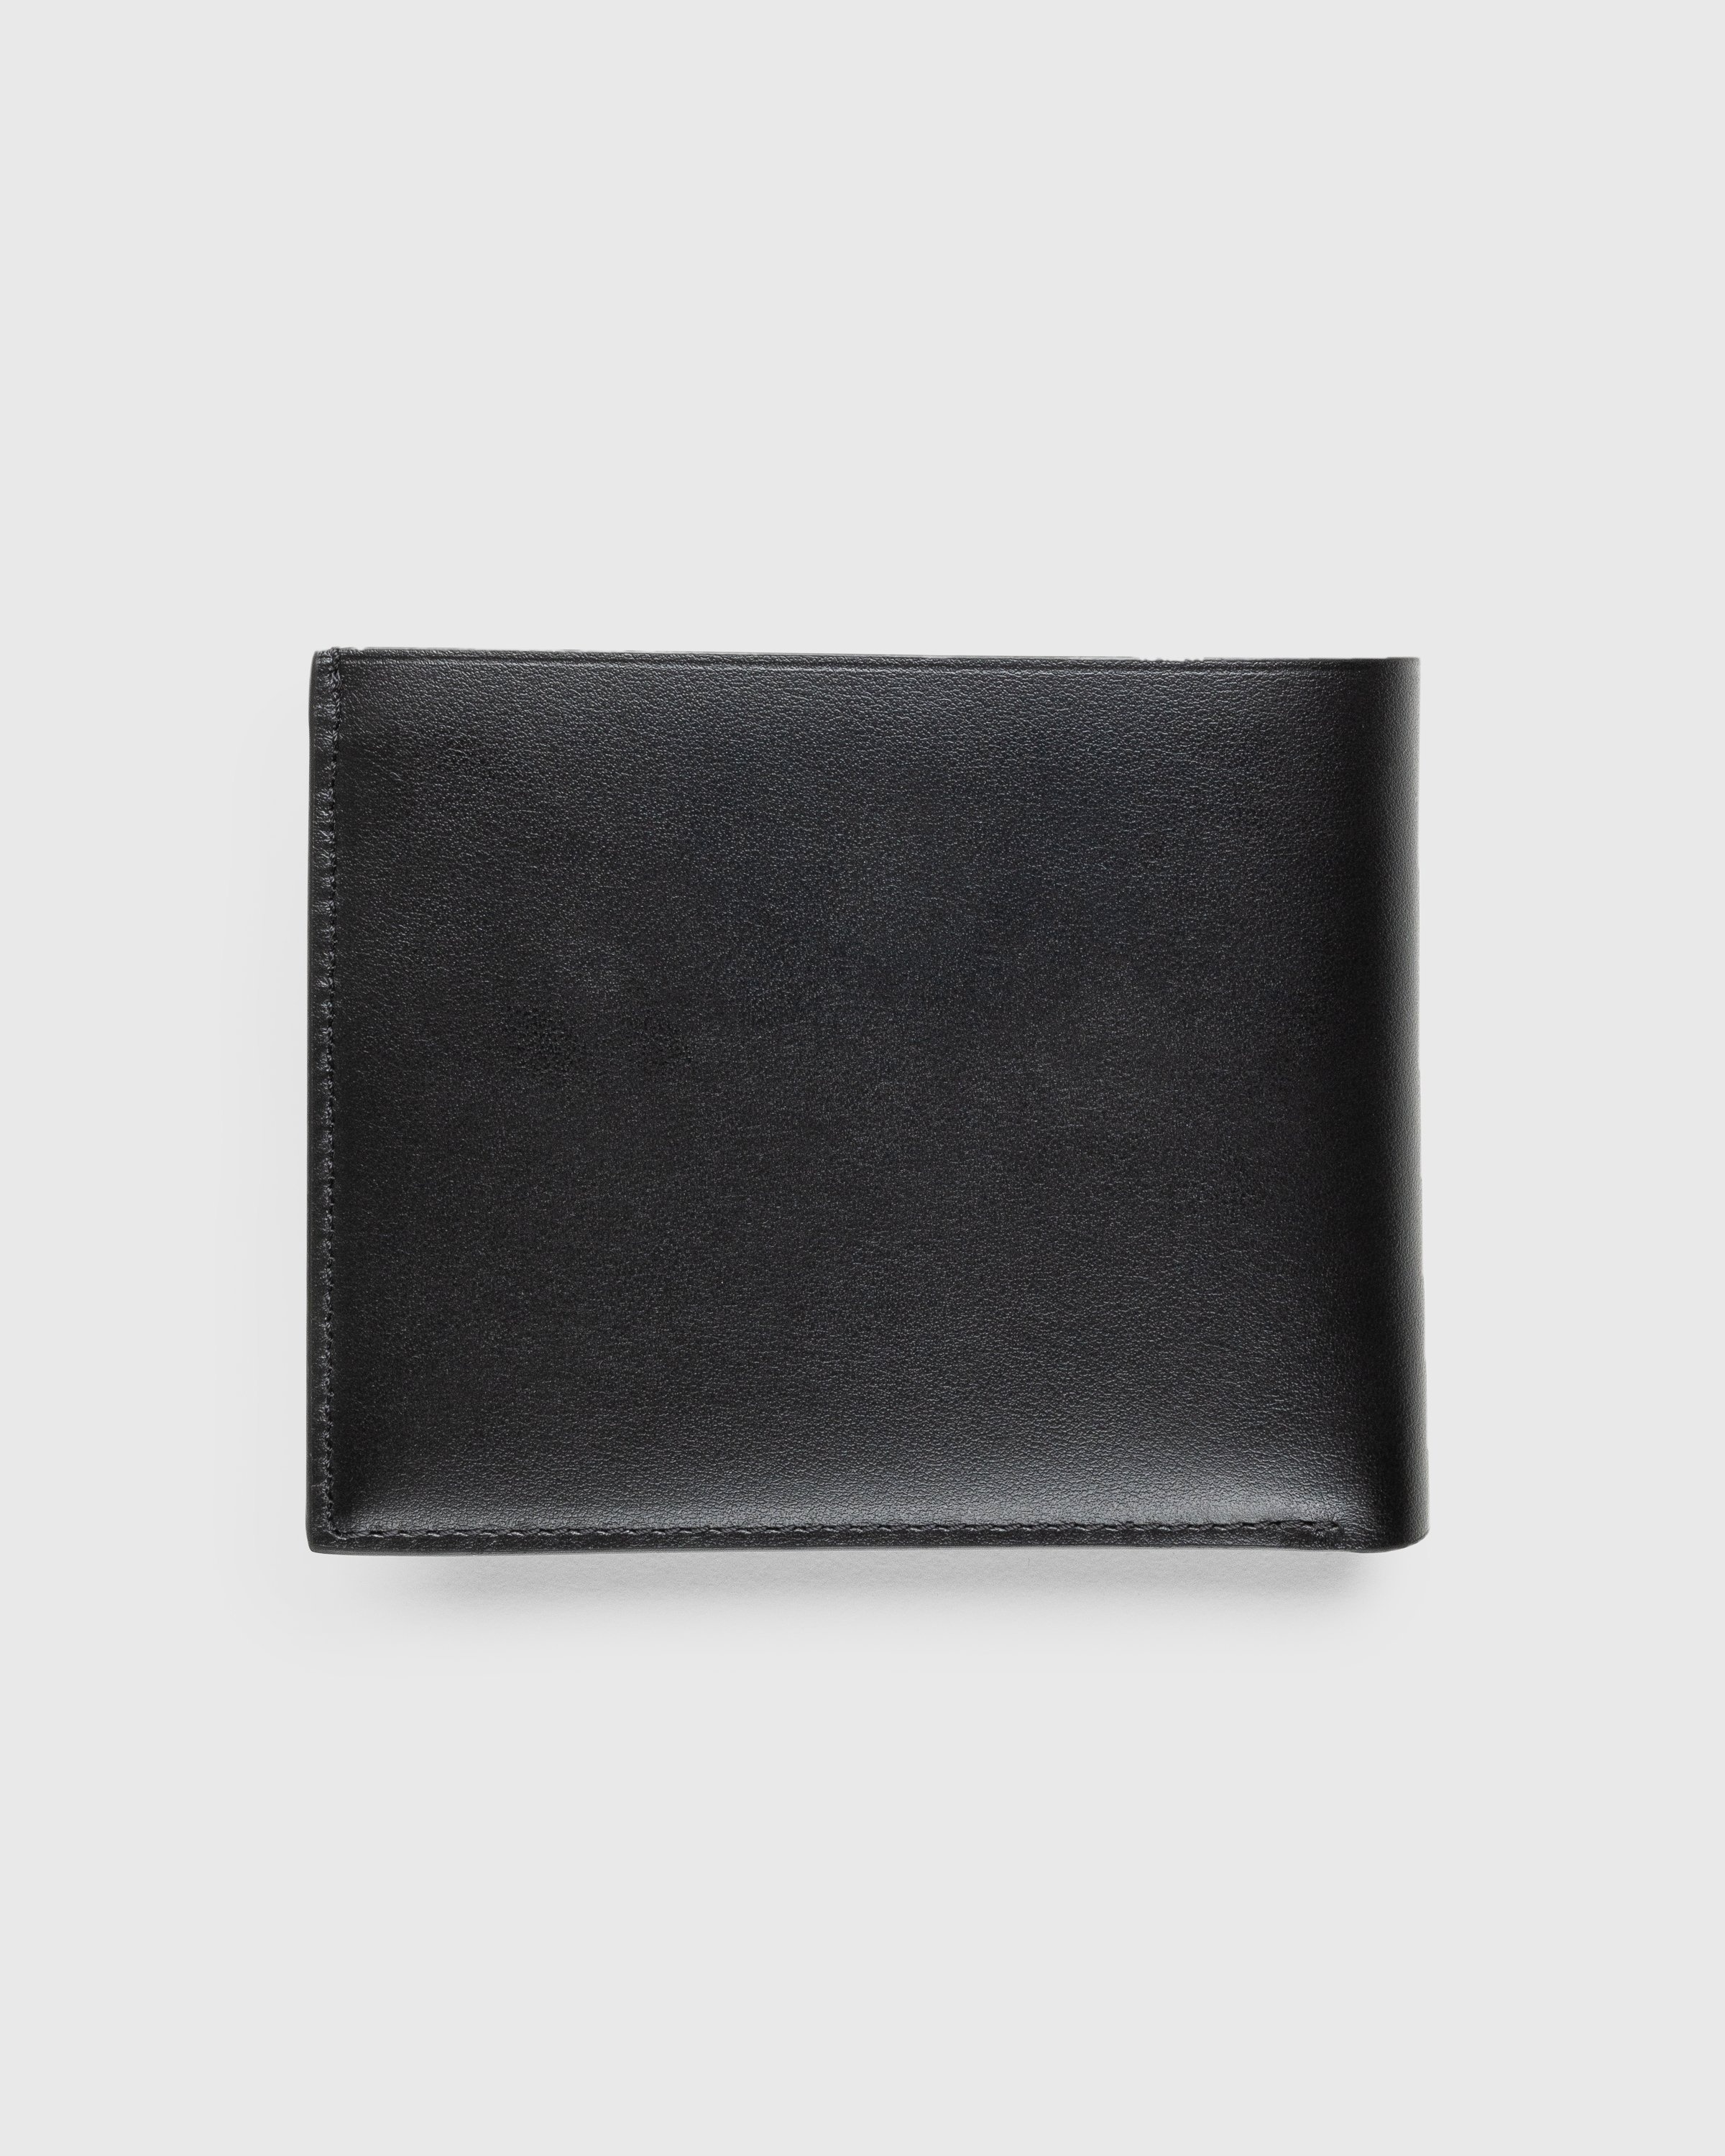 Jil Sander – Zip Pocket Wallet Black - Wallets - Black - Image 2